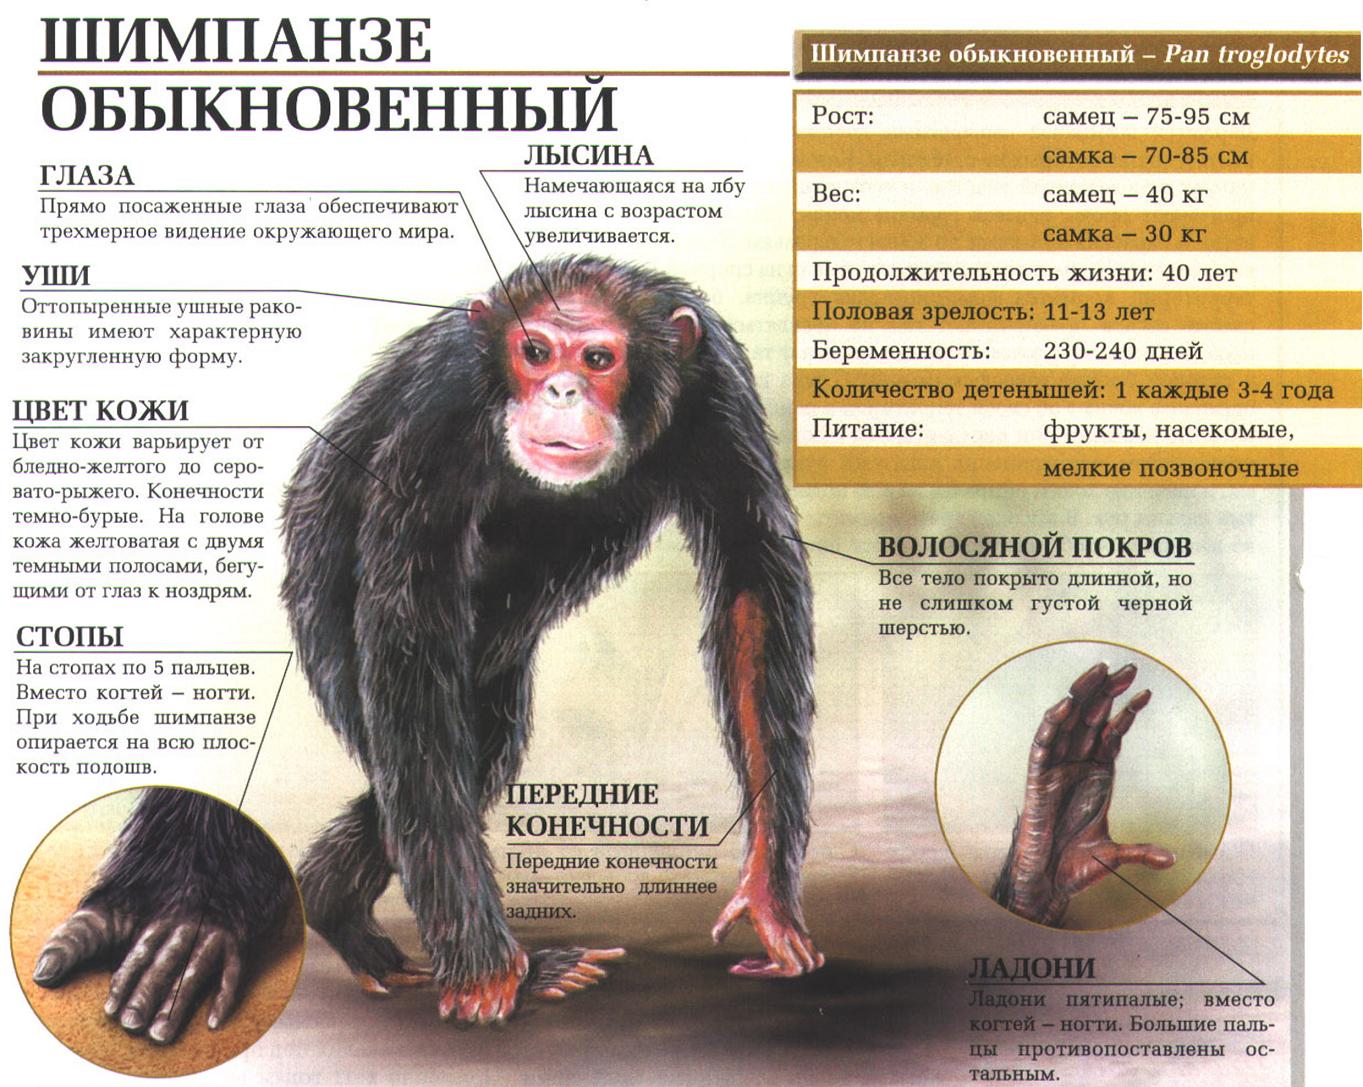 Описание обыкновенного шимпанзе.